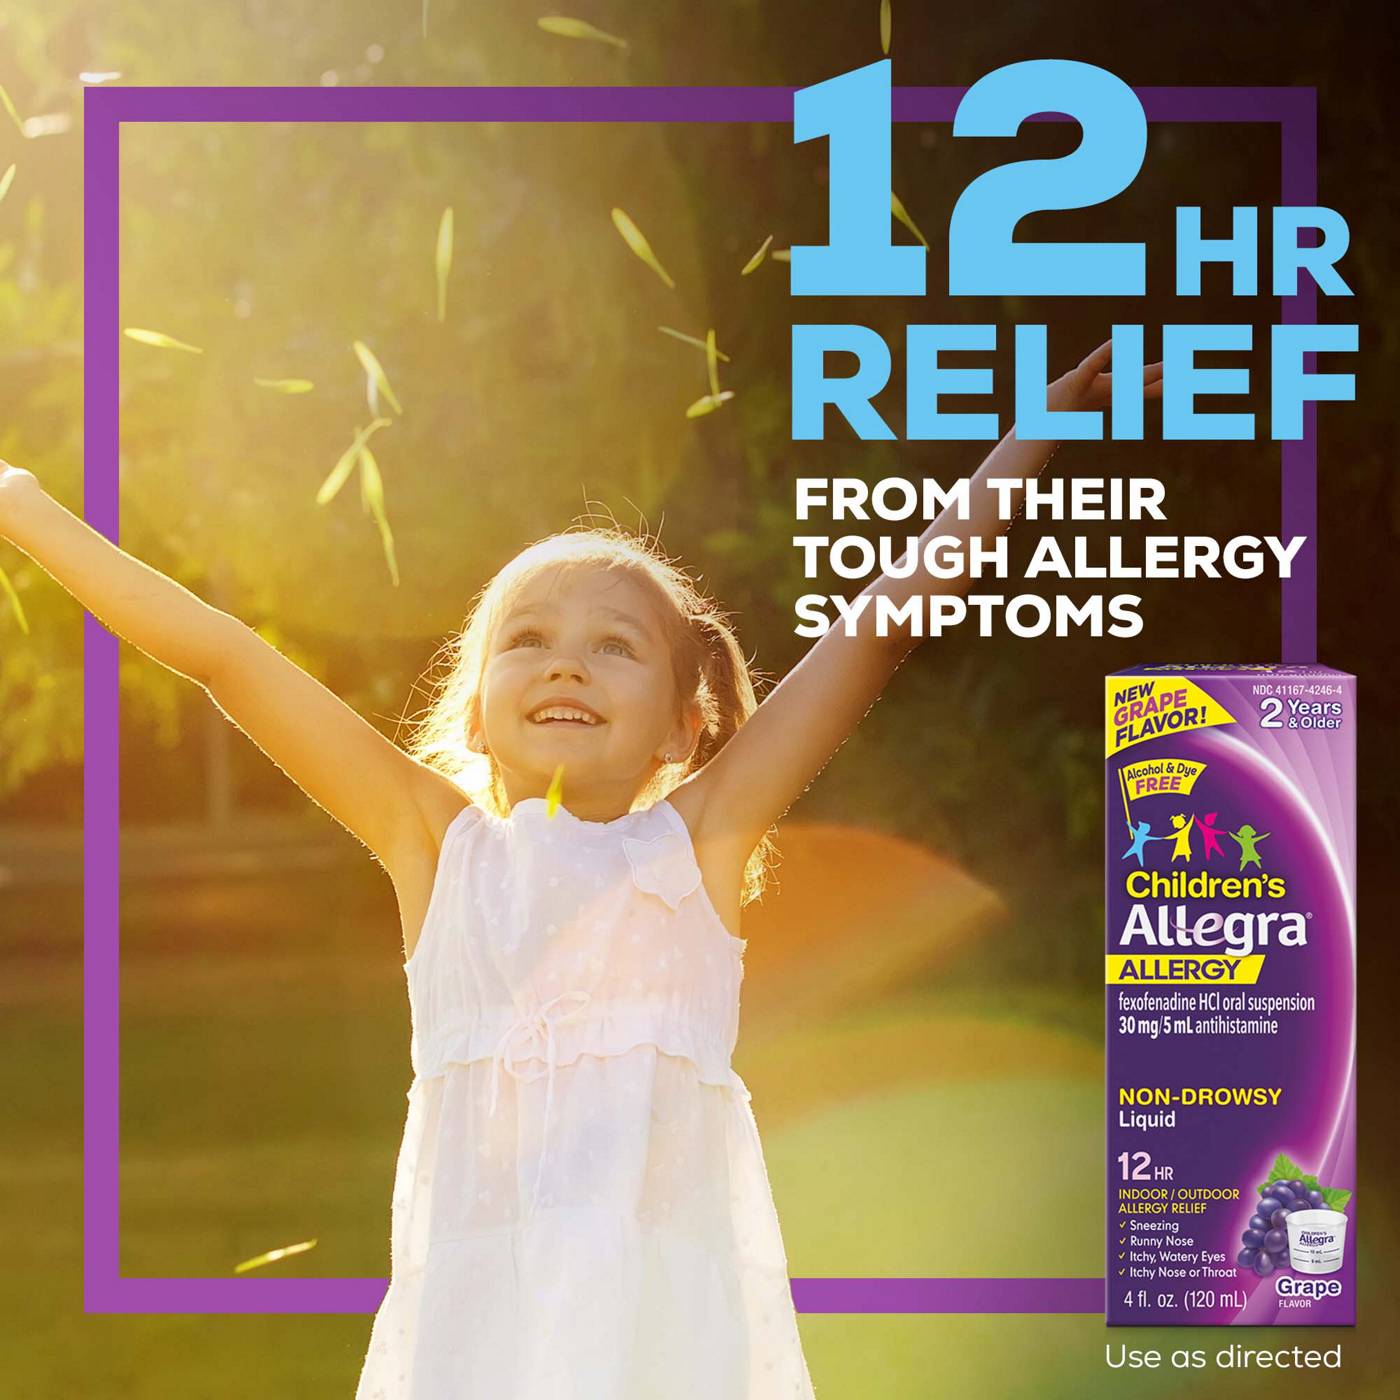 Allegra Children's Allergy 12 Hour Non-Drowsy Liquid - Grape; image 6 of 6